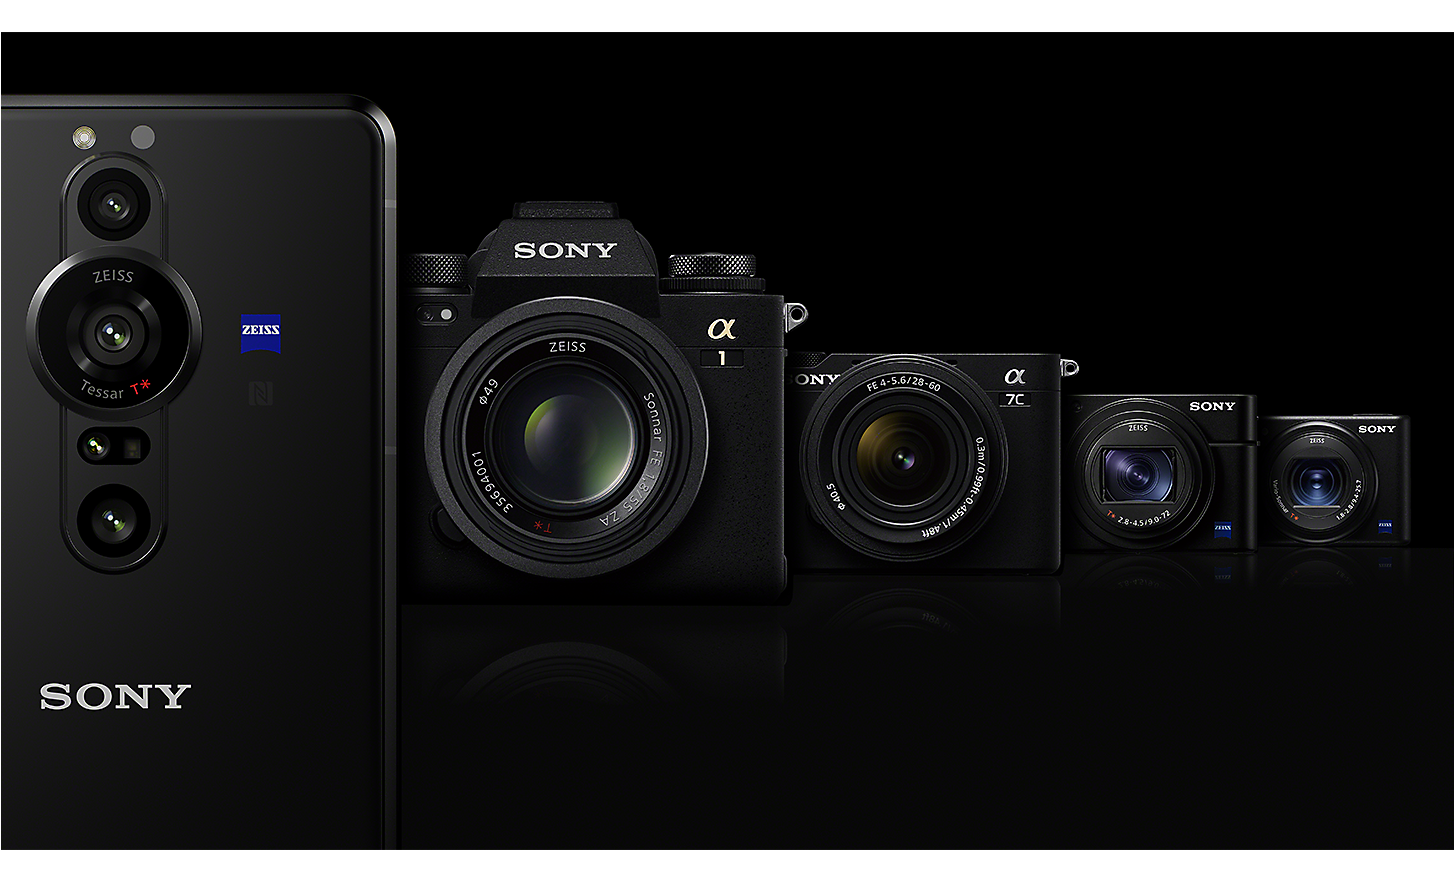 Xperia PRO-I ved siden af fire andre modeller i Sonys kamerasortiment